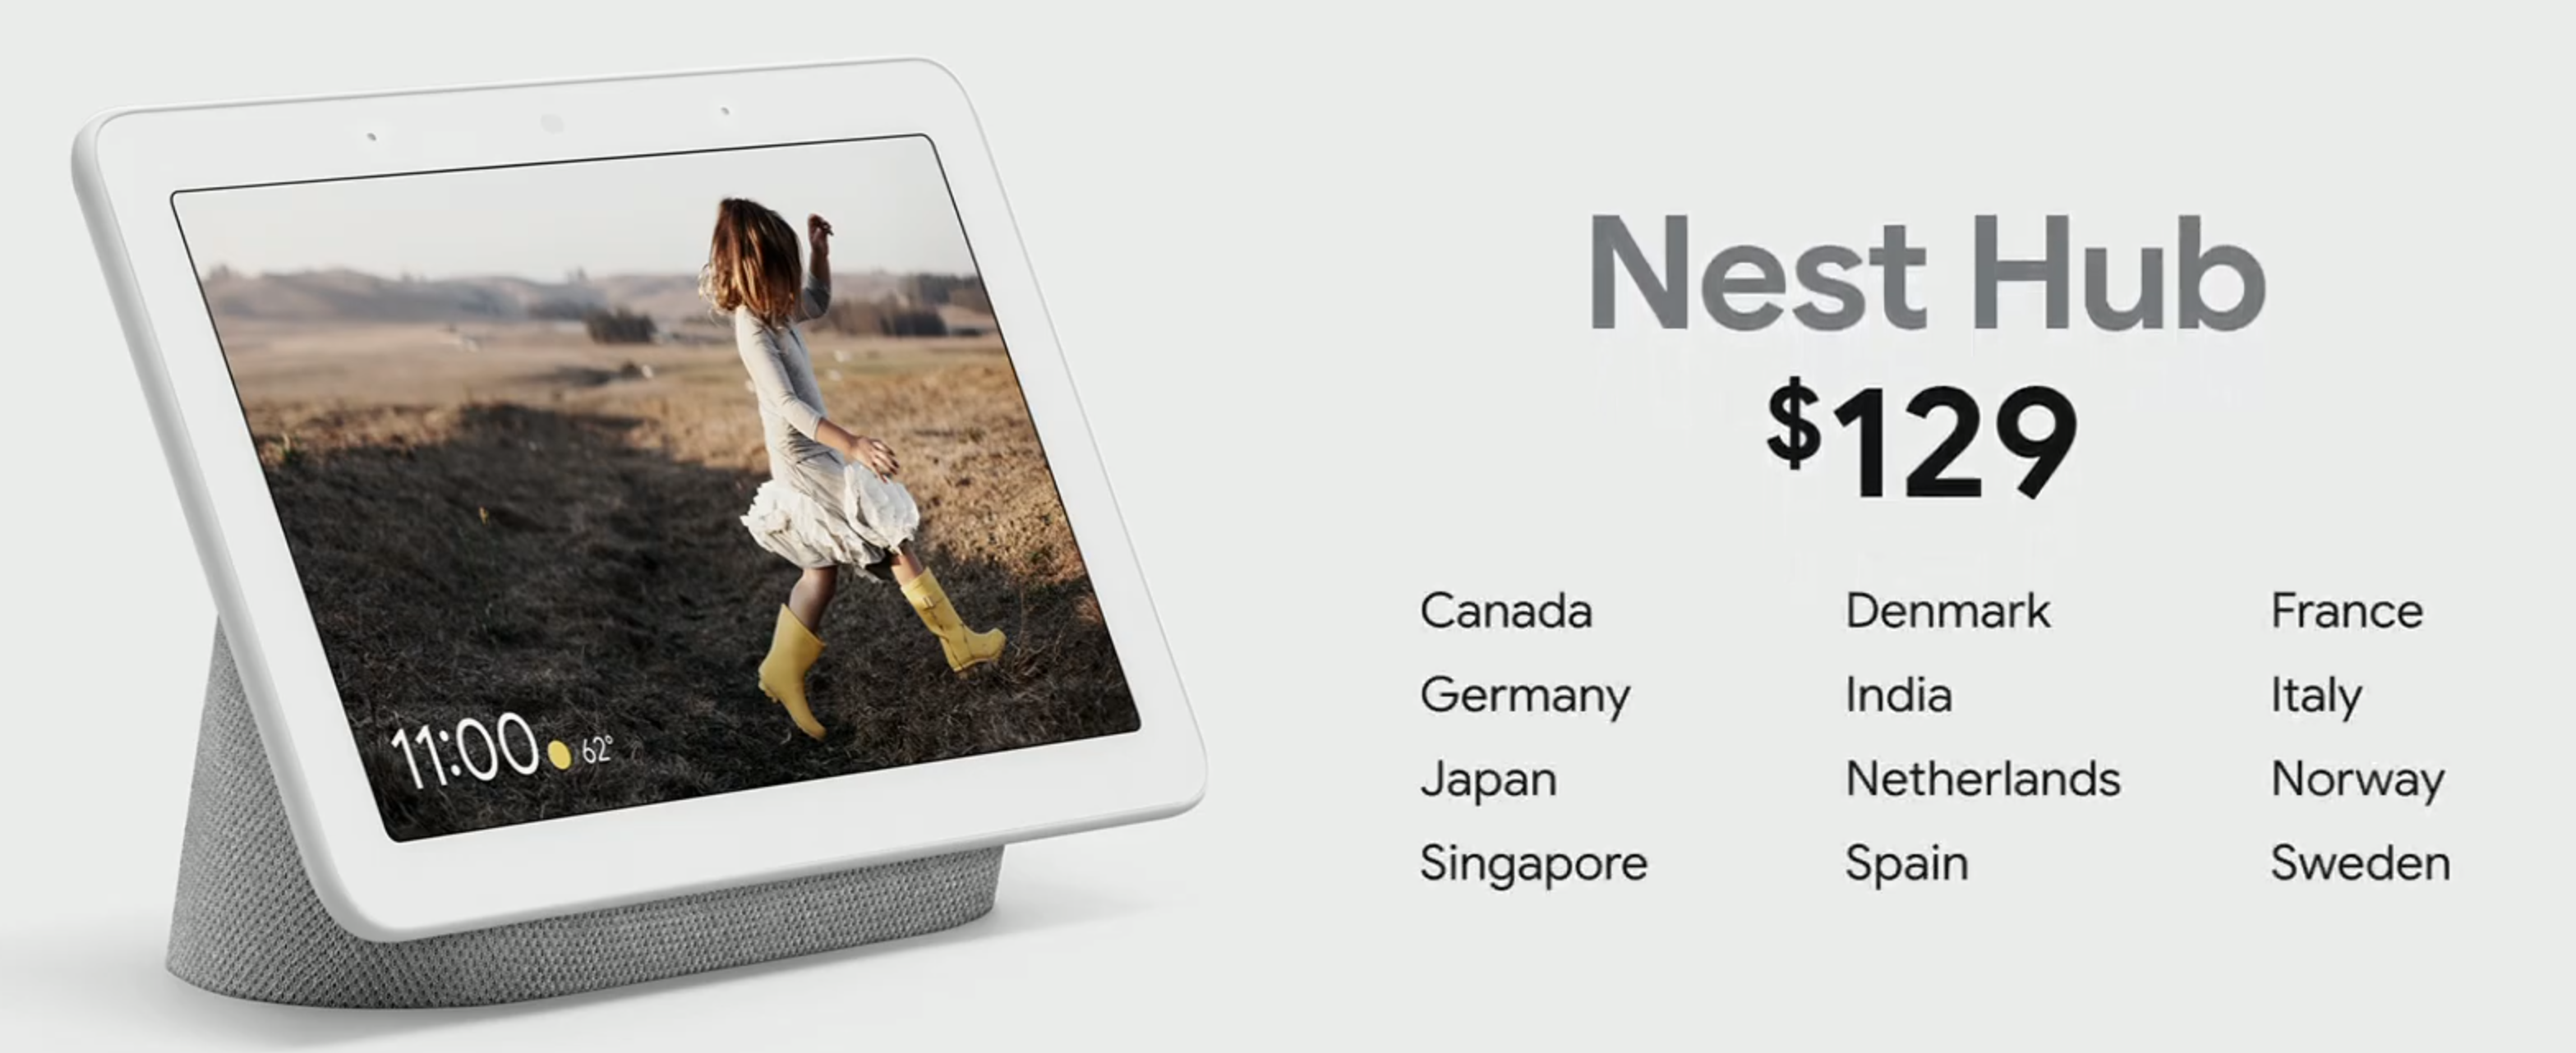 Den vanlige Google Home Hub, nå kalt Nest Home, blir tilgjengelig i Norge. Norsk pris blir 1300 kroner.